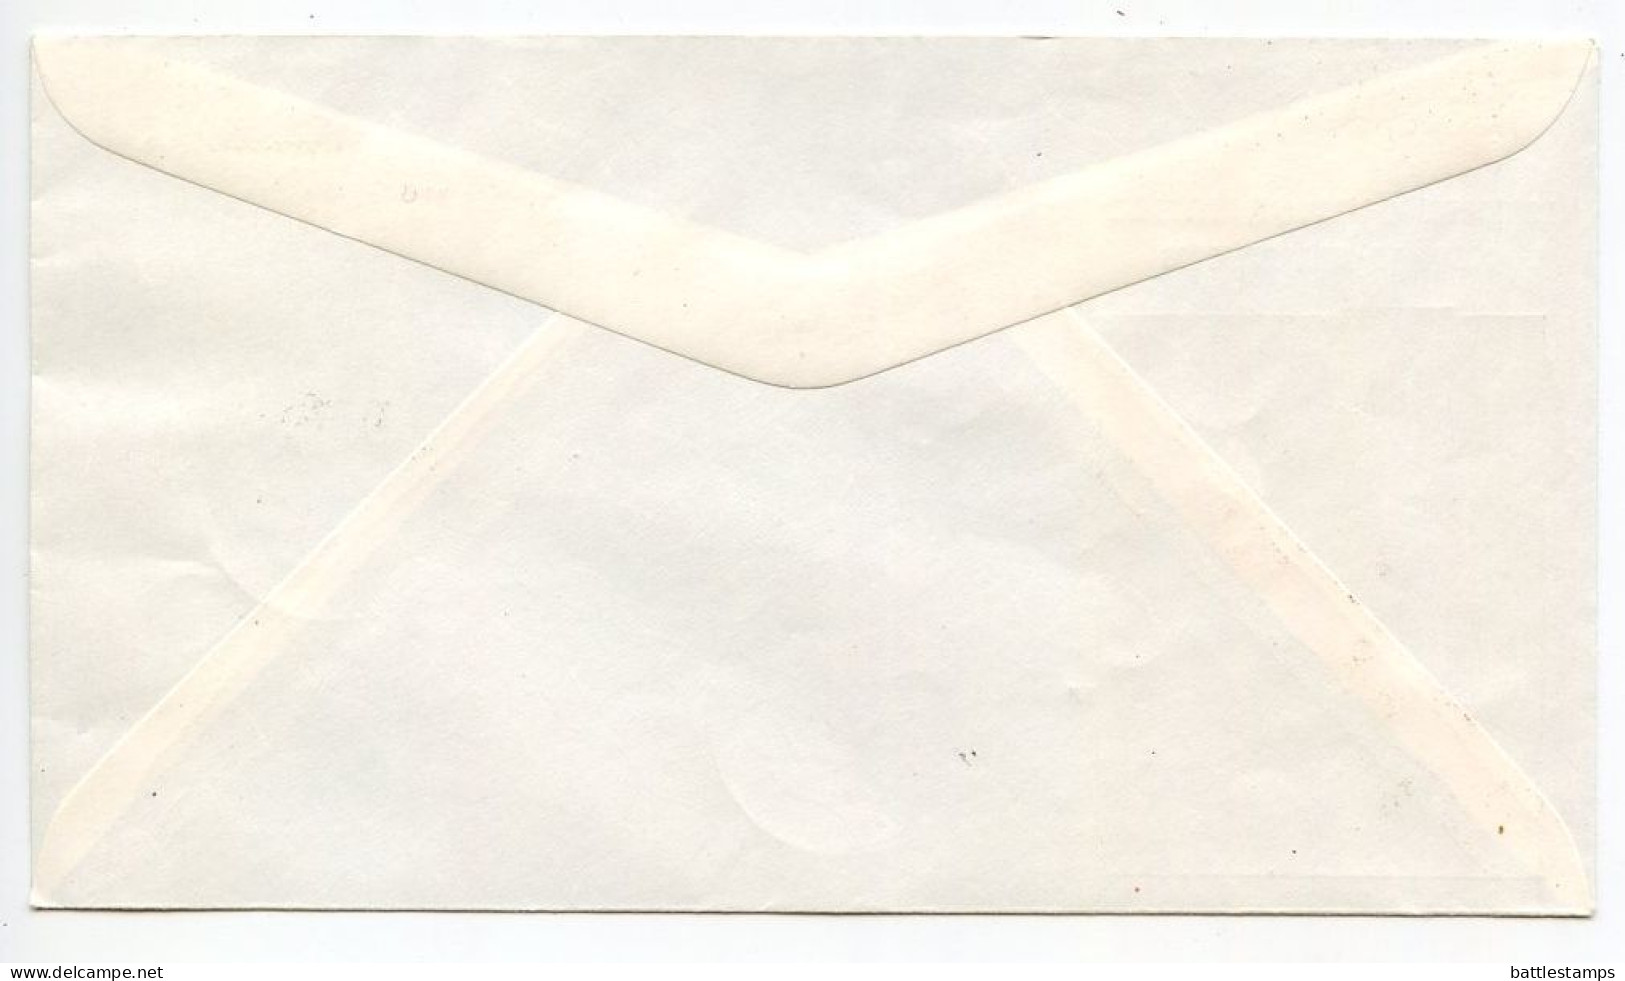 Saar 1959 Commemorative Cover Letzter Gültigkeitstag Für Freimarken / Last Day Of Validity For Postage Stamps - Cartas & Documentos